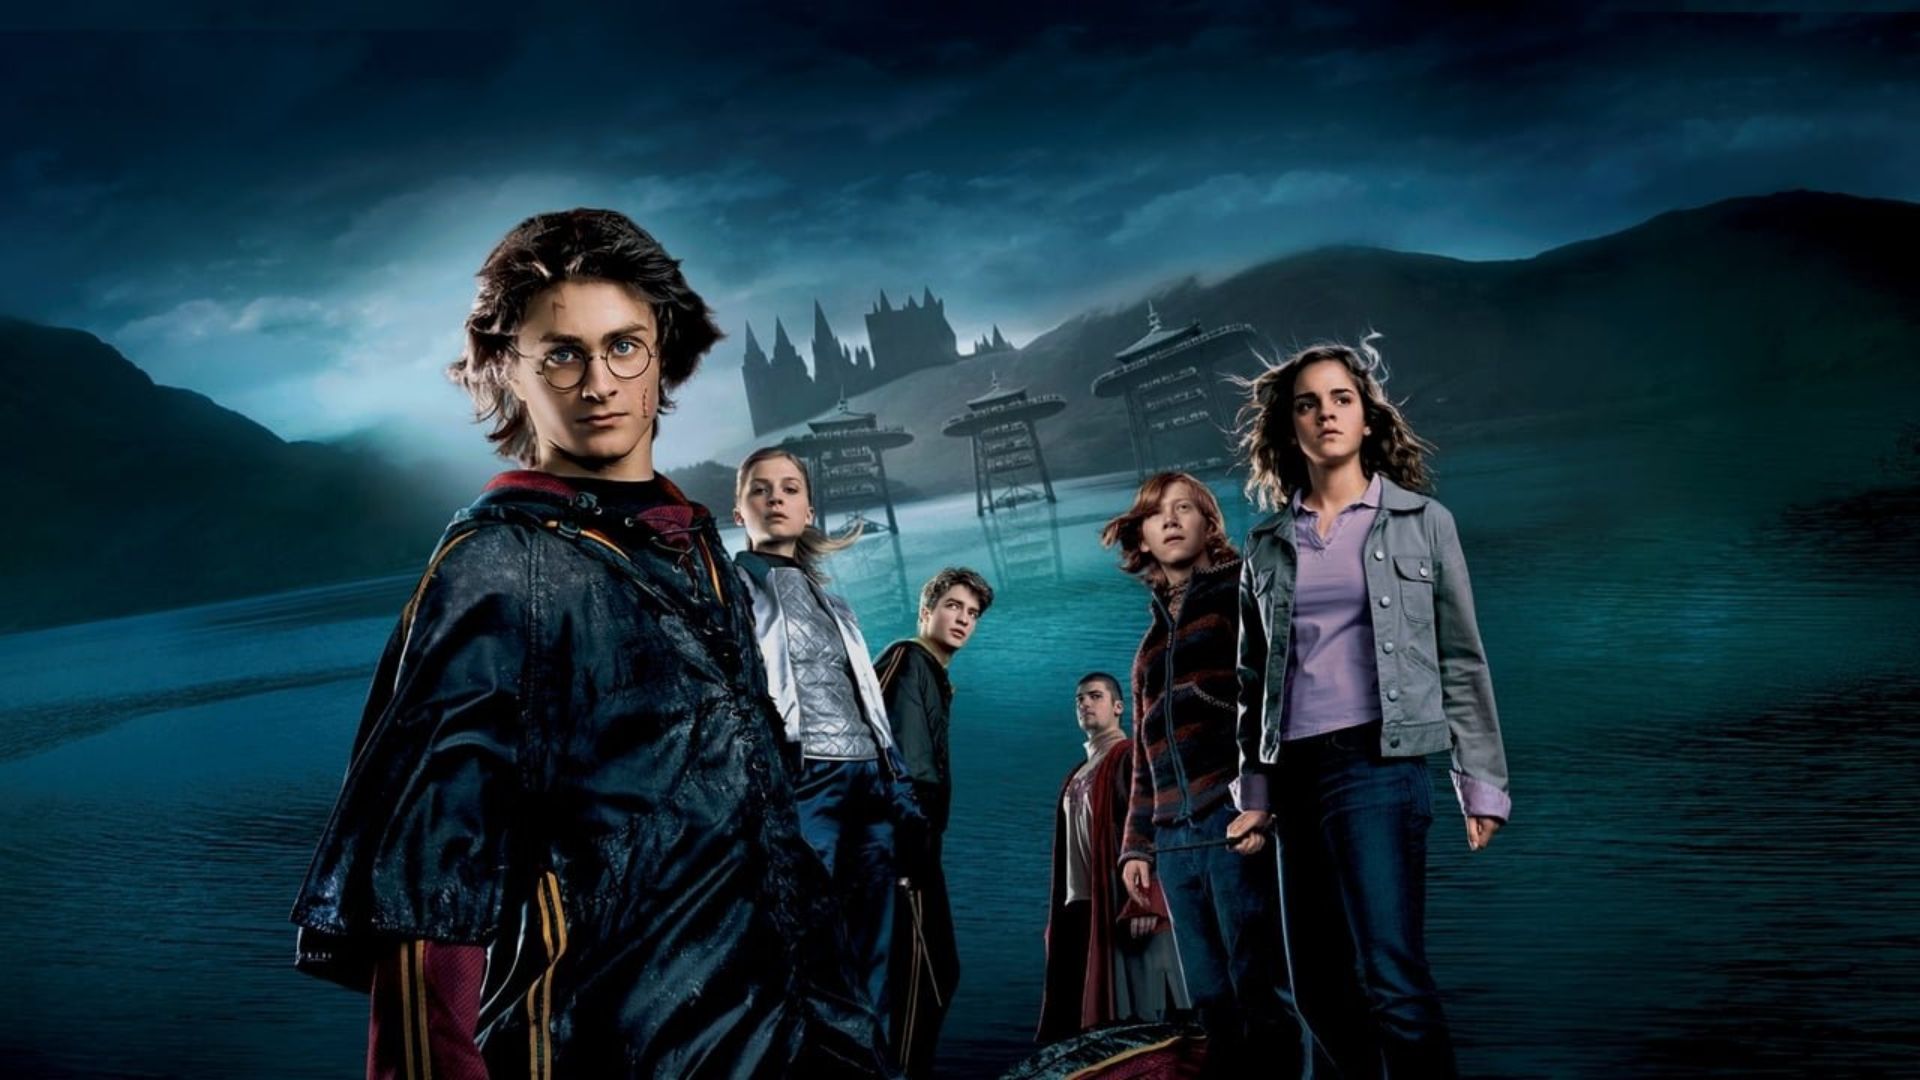 Em "Harry Potter e o Cálice de Fogo", o Torneio Tribruxo está de volta com um desafio extra para Harry Potter (Foto: Divulgação/Warner Bros. Pictures)